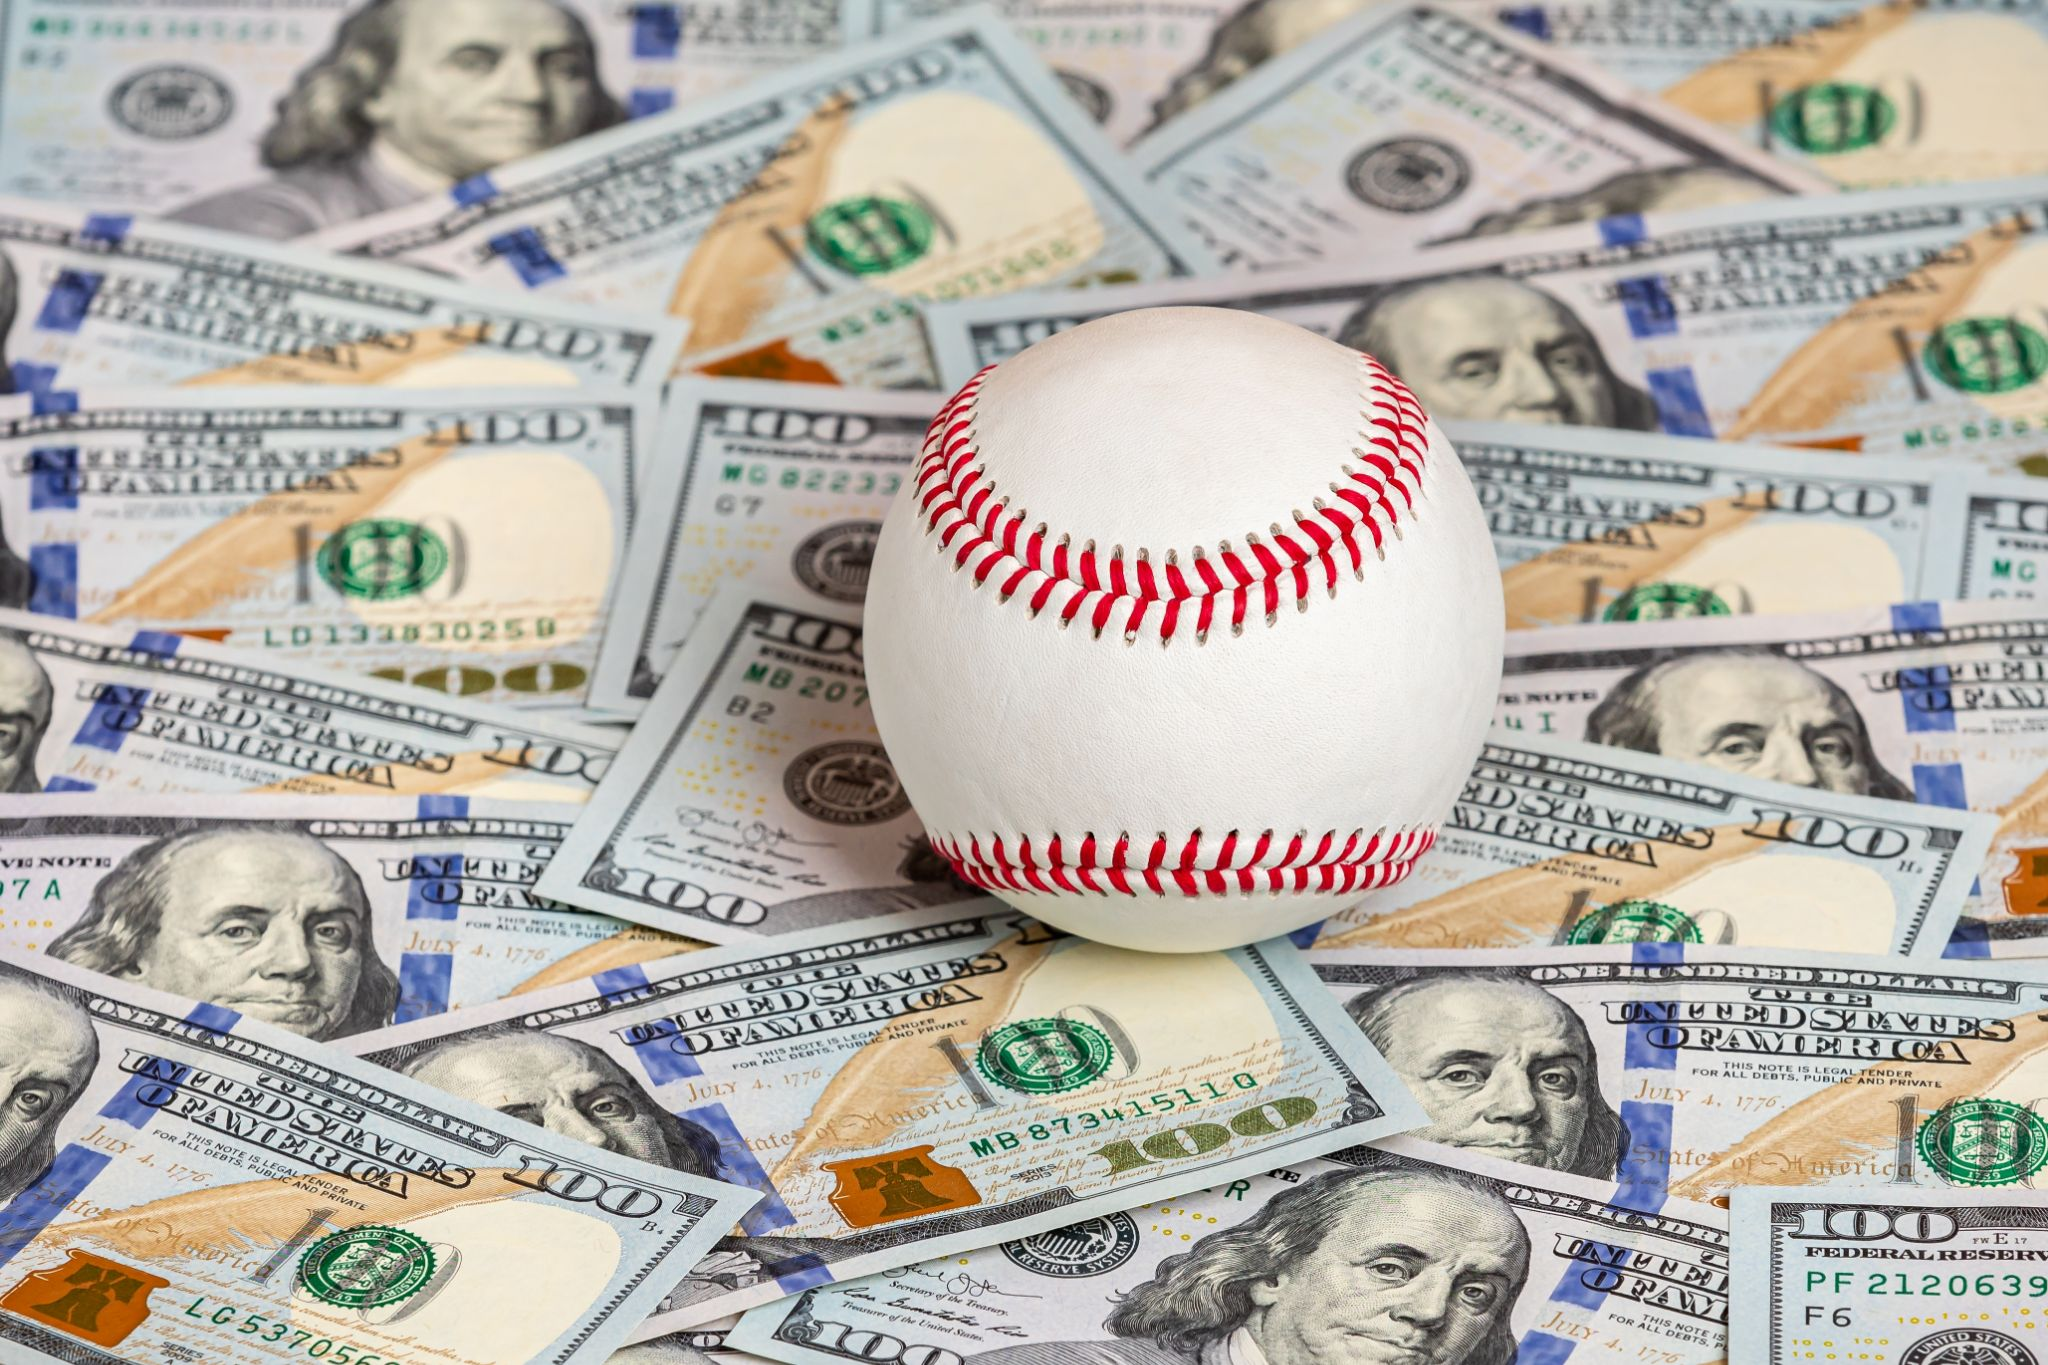 Money under a baseball